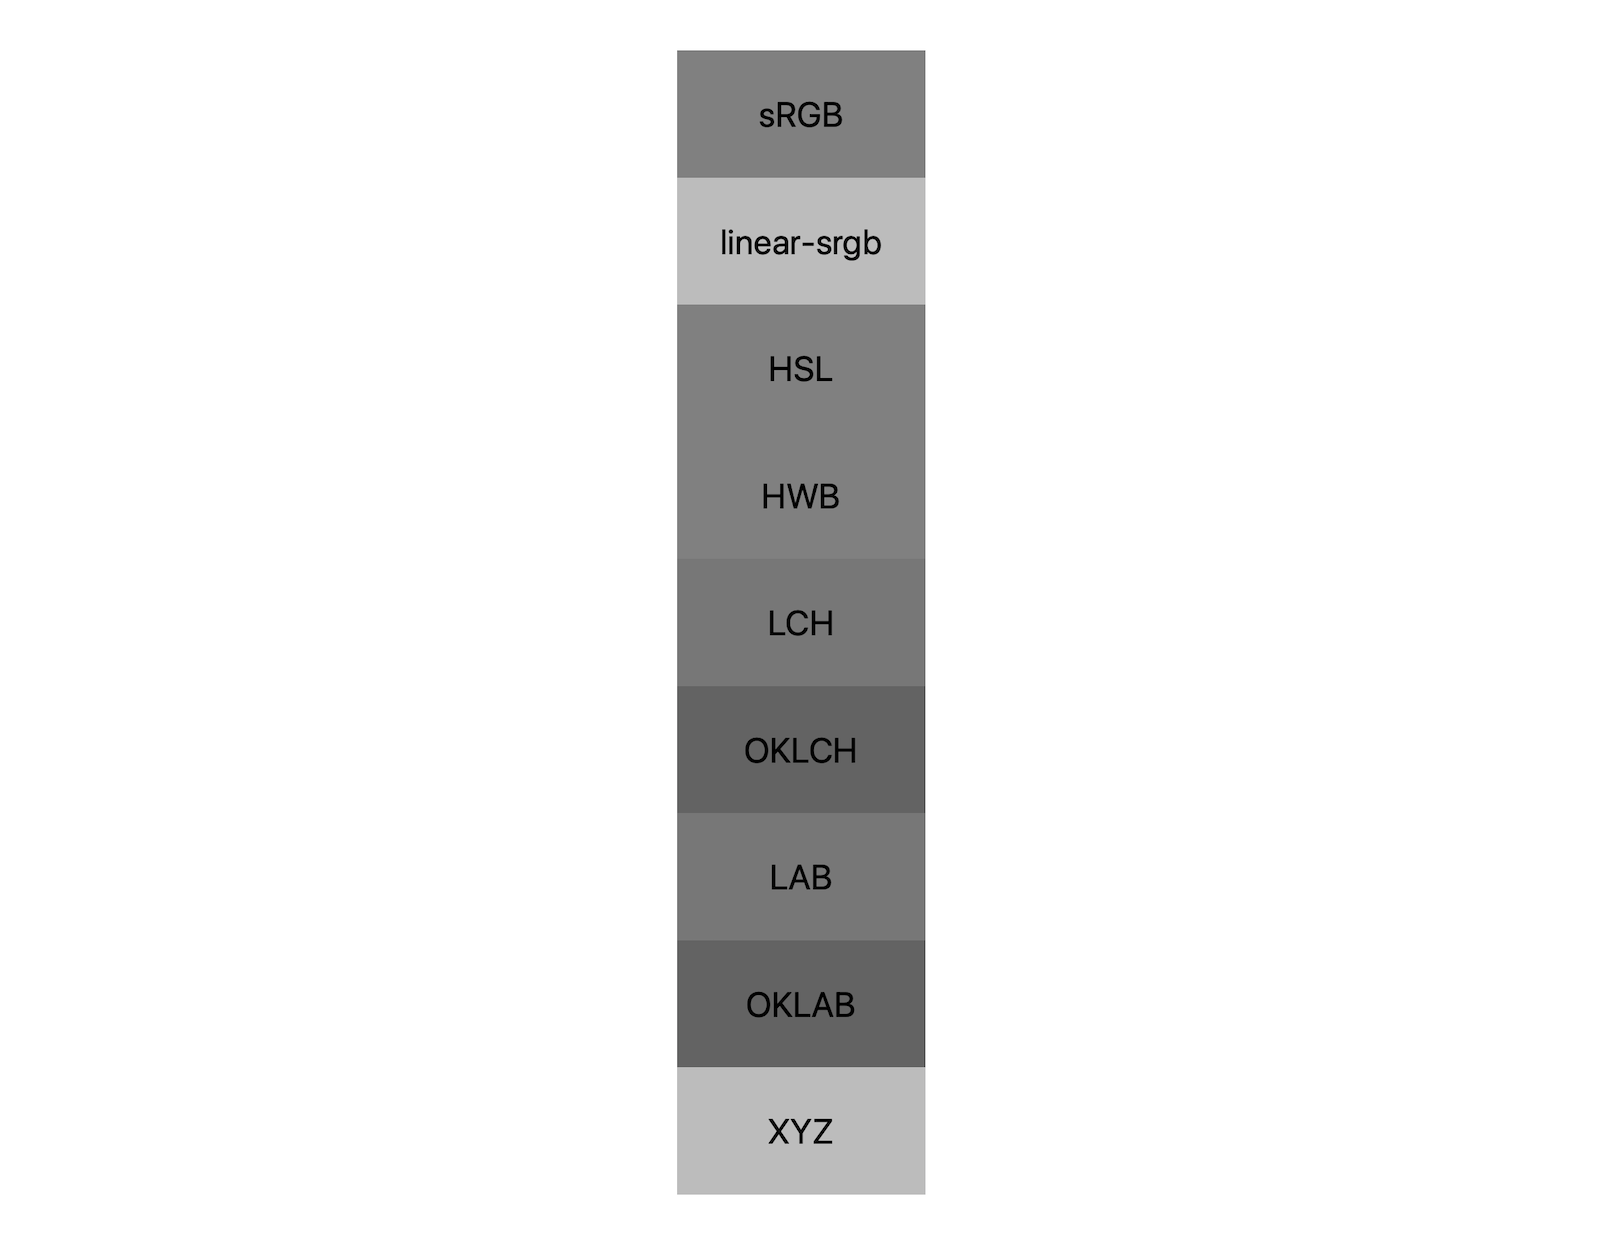 7 つの色空間（sRGB、linear-sRGB、lch、oklch、lab、oklab、xyz）のそれぞれが、白黒を混ぜた結果を示しています。およそ 5 つの異なるシェードが表示されています。これは、各色空間がグレーに異なる方法で混ざり合っていることを示しています。